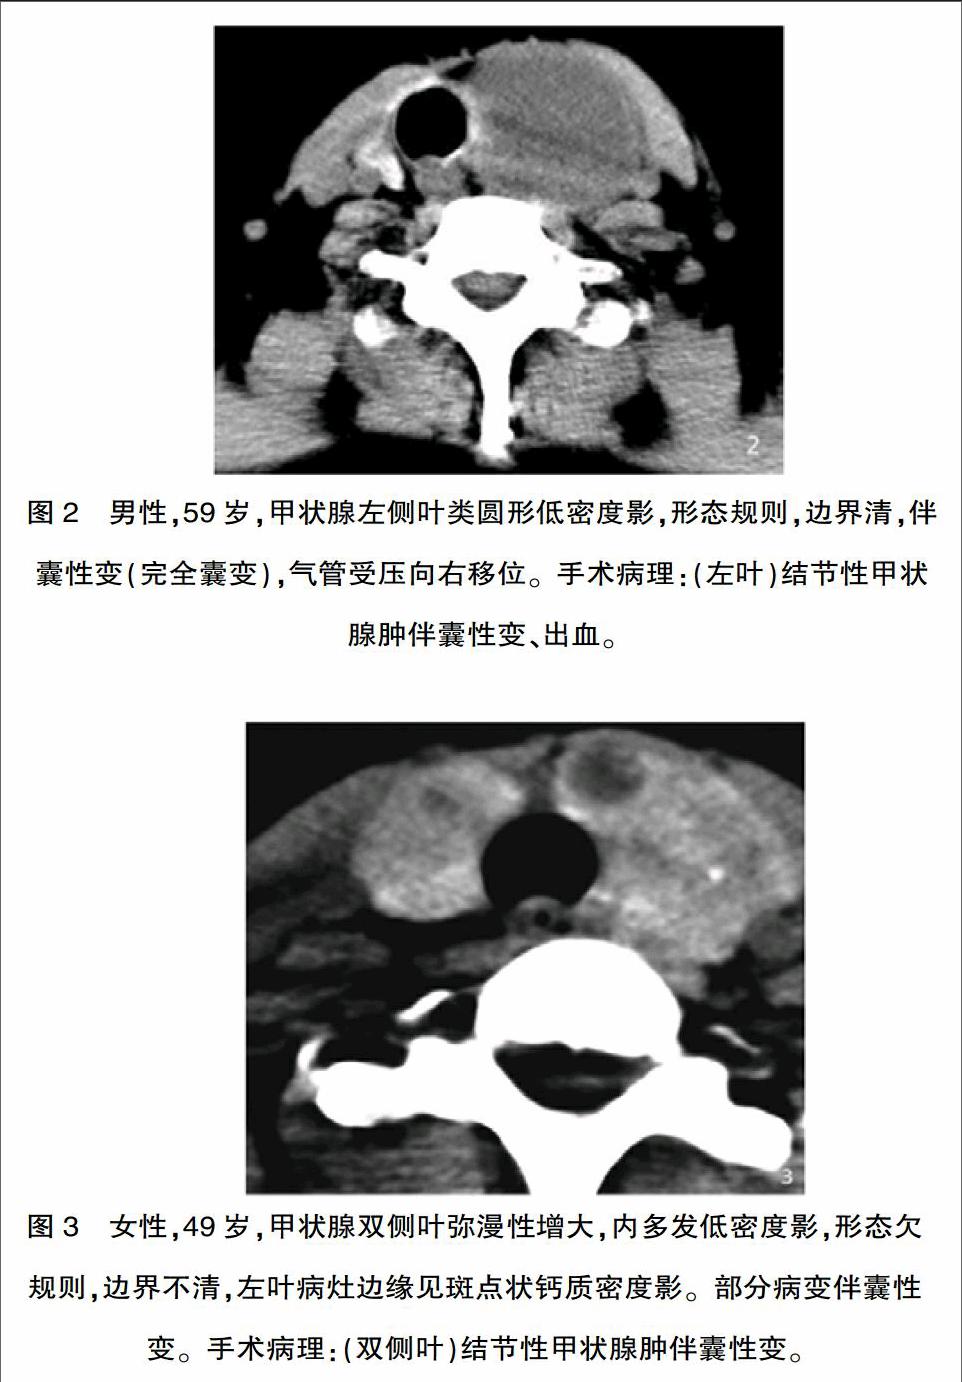 甲状腺ct扫描范围图片